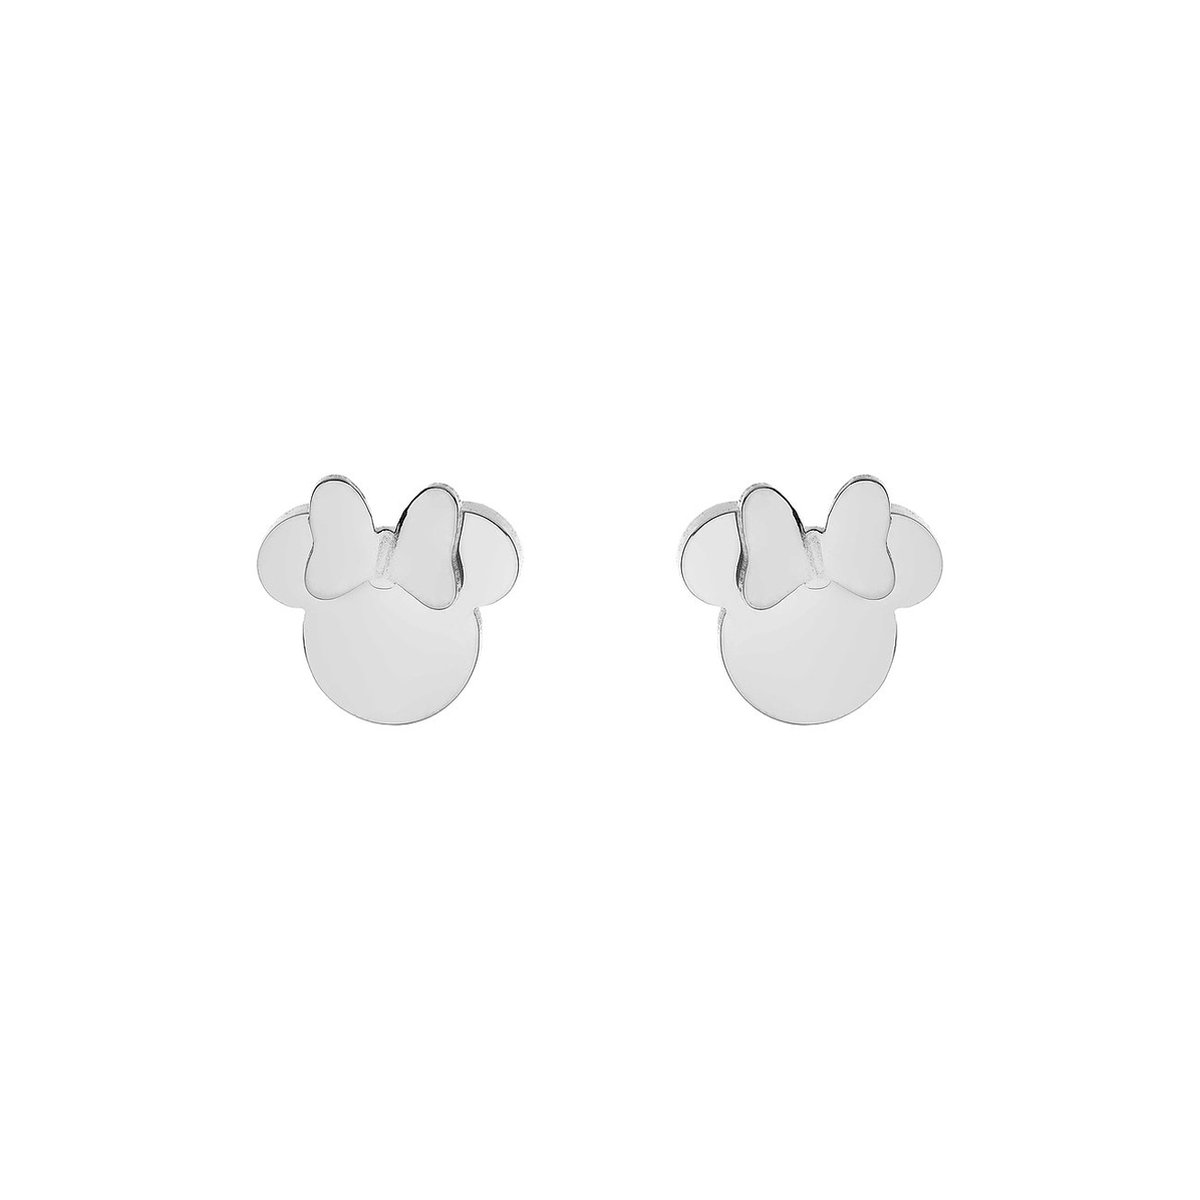 Disney 4-DIS029 Minnie Mouse Oorbellen - Minnie Oorknopjes - Disney Sieraden - 6,9x7,5mm - Staal - Hipoallergeen - Zilverkleurig